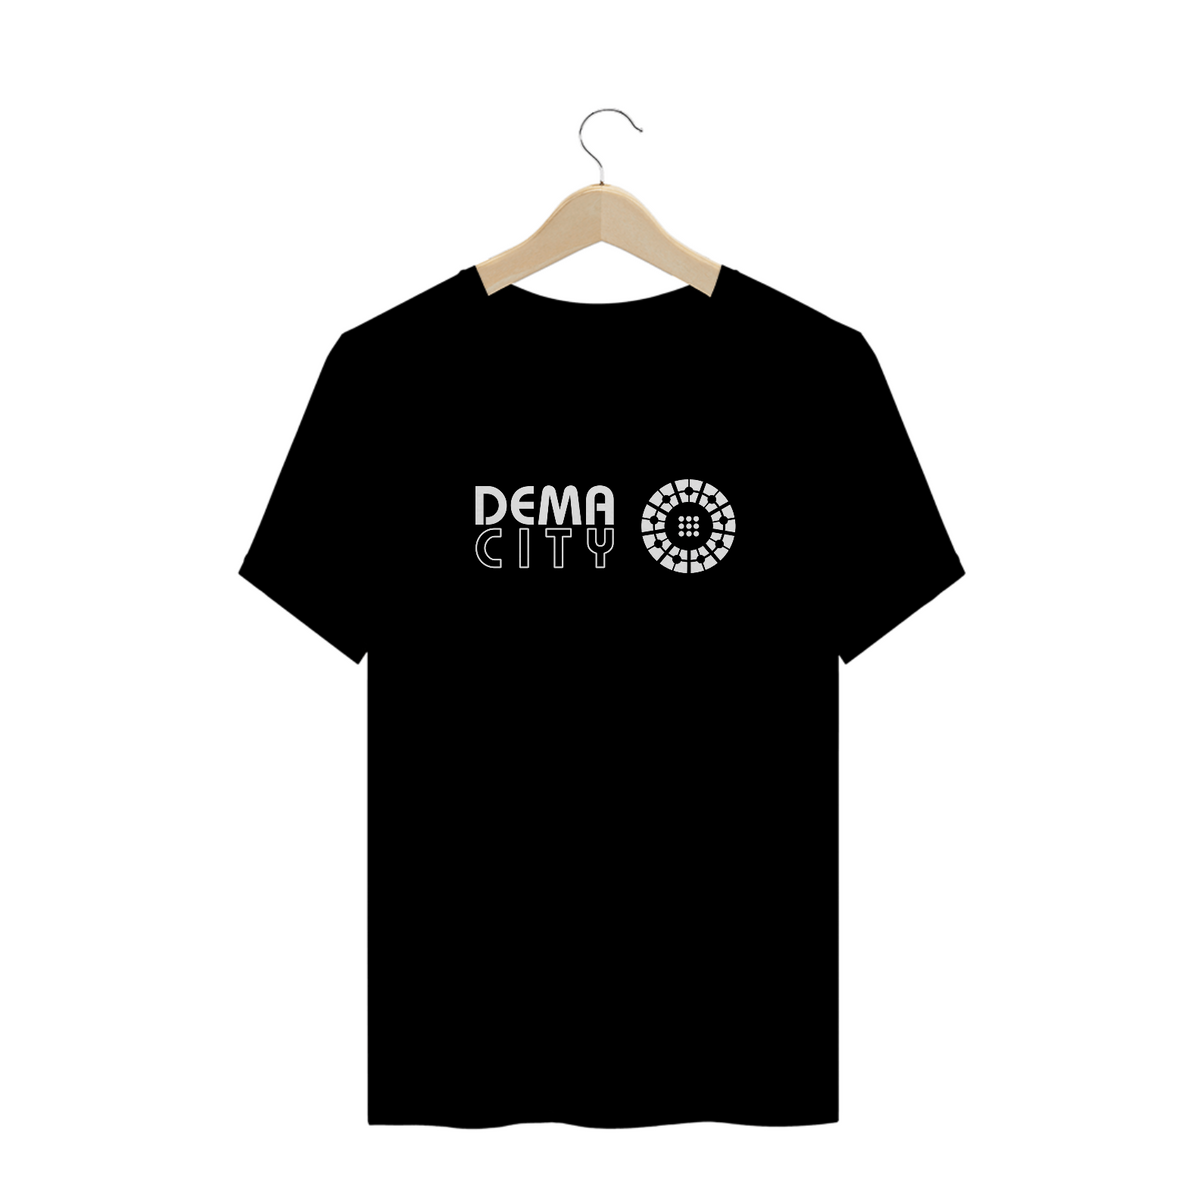 Nome do produto: Camiseta Dema City - Twenty one pilots